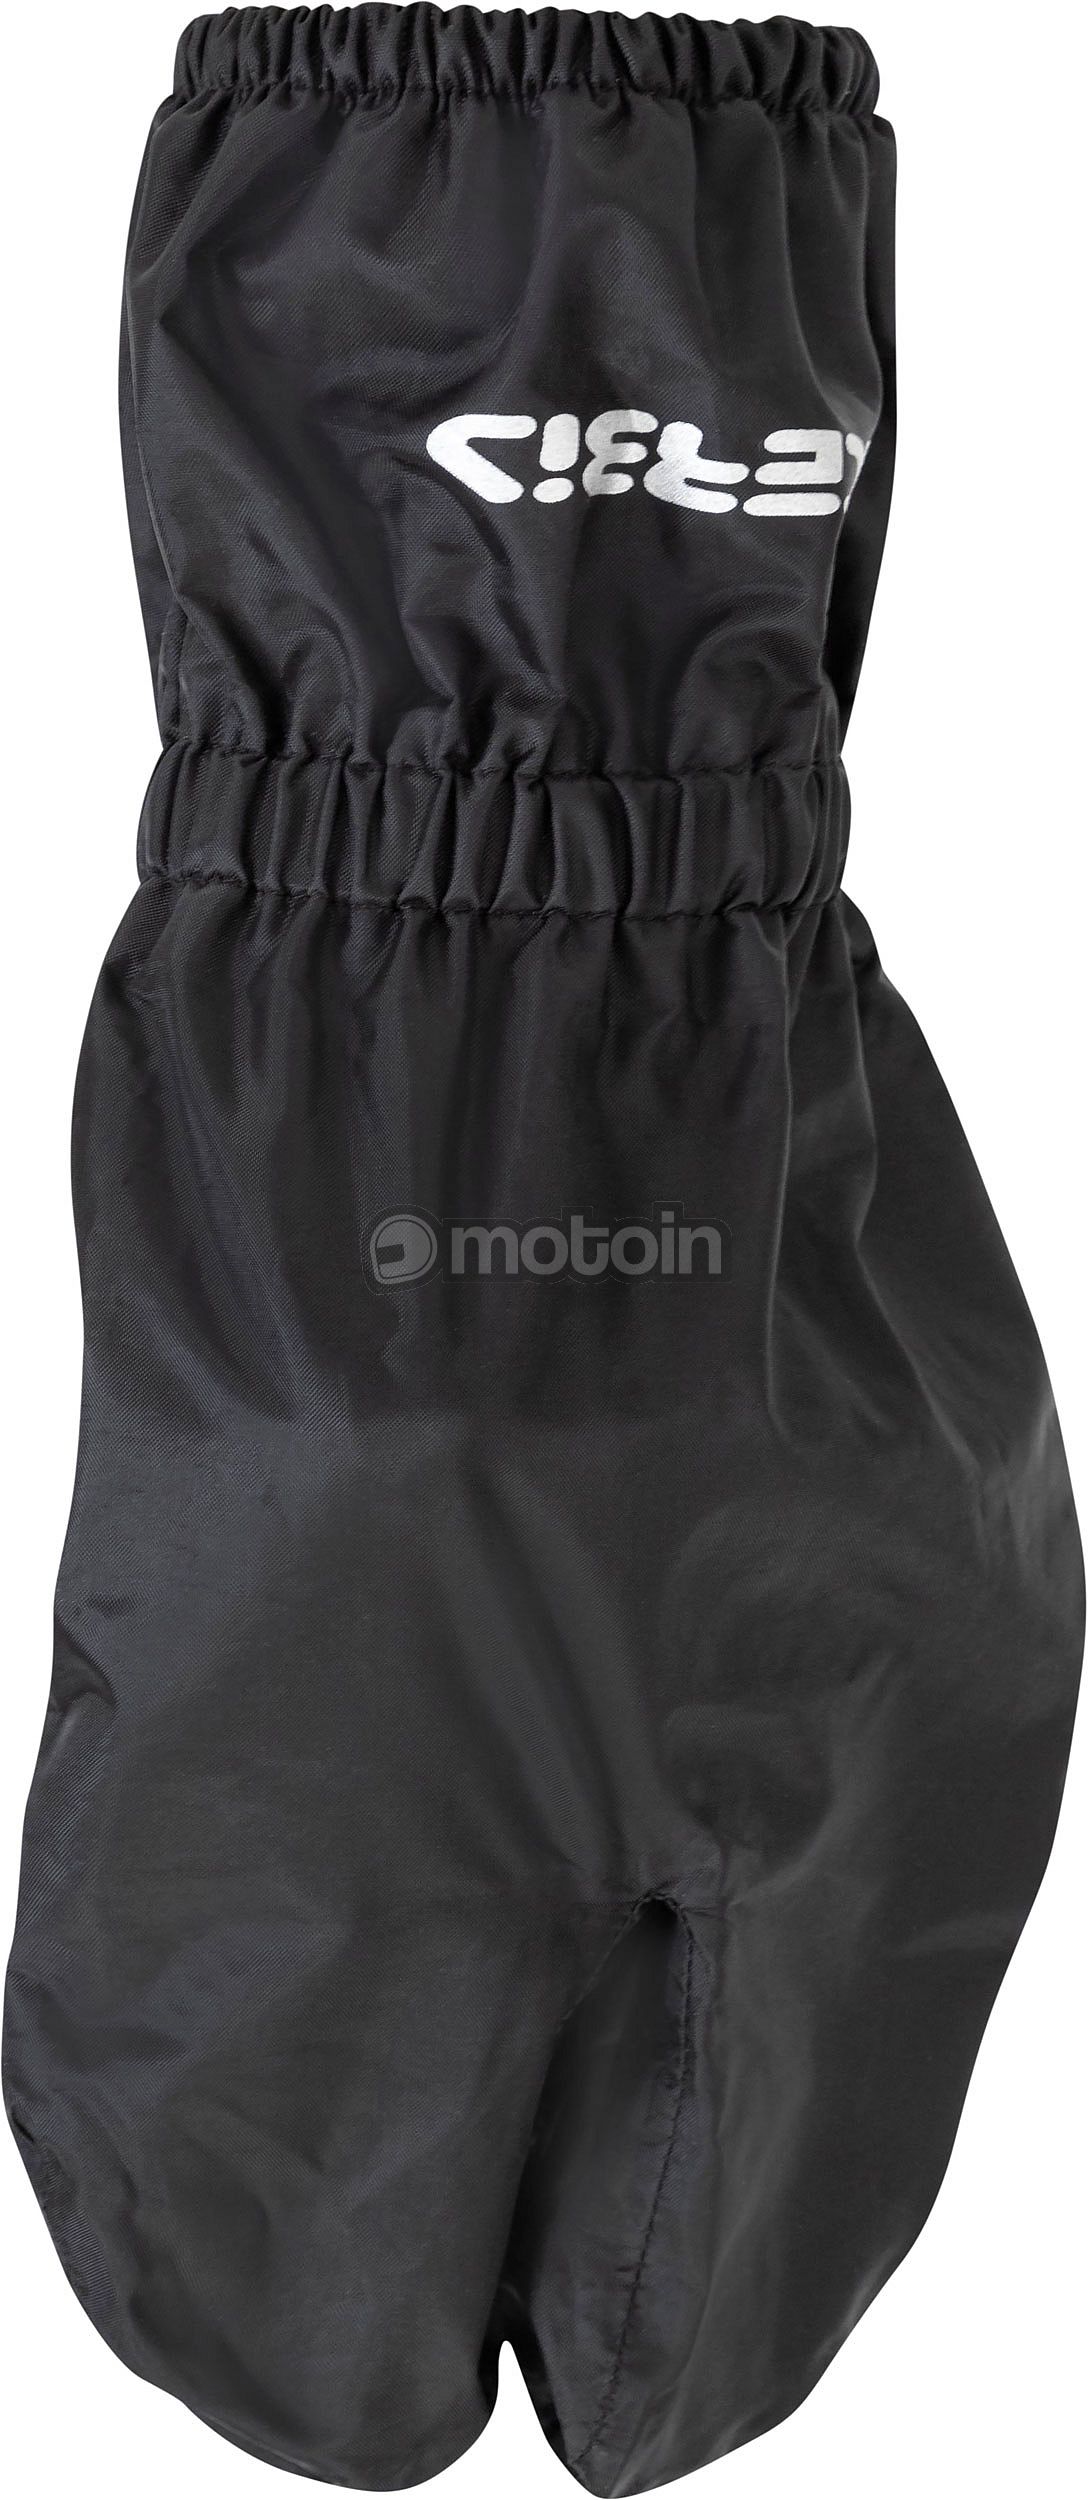 Acerbis Cover 4.0, sobre-guantes impermeables